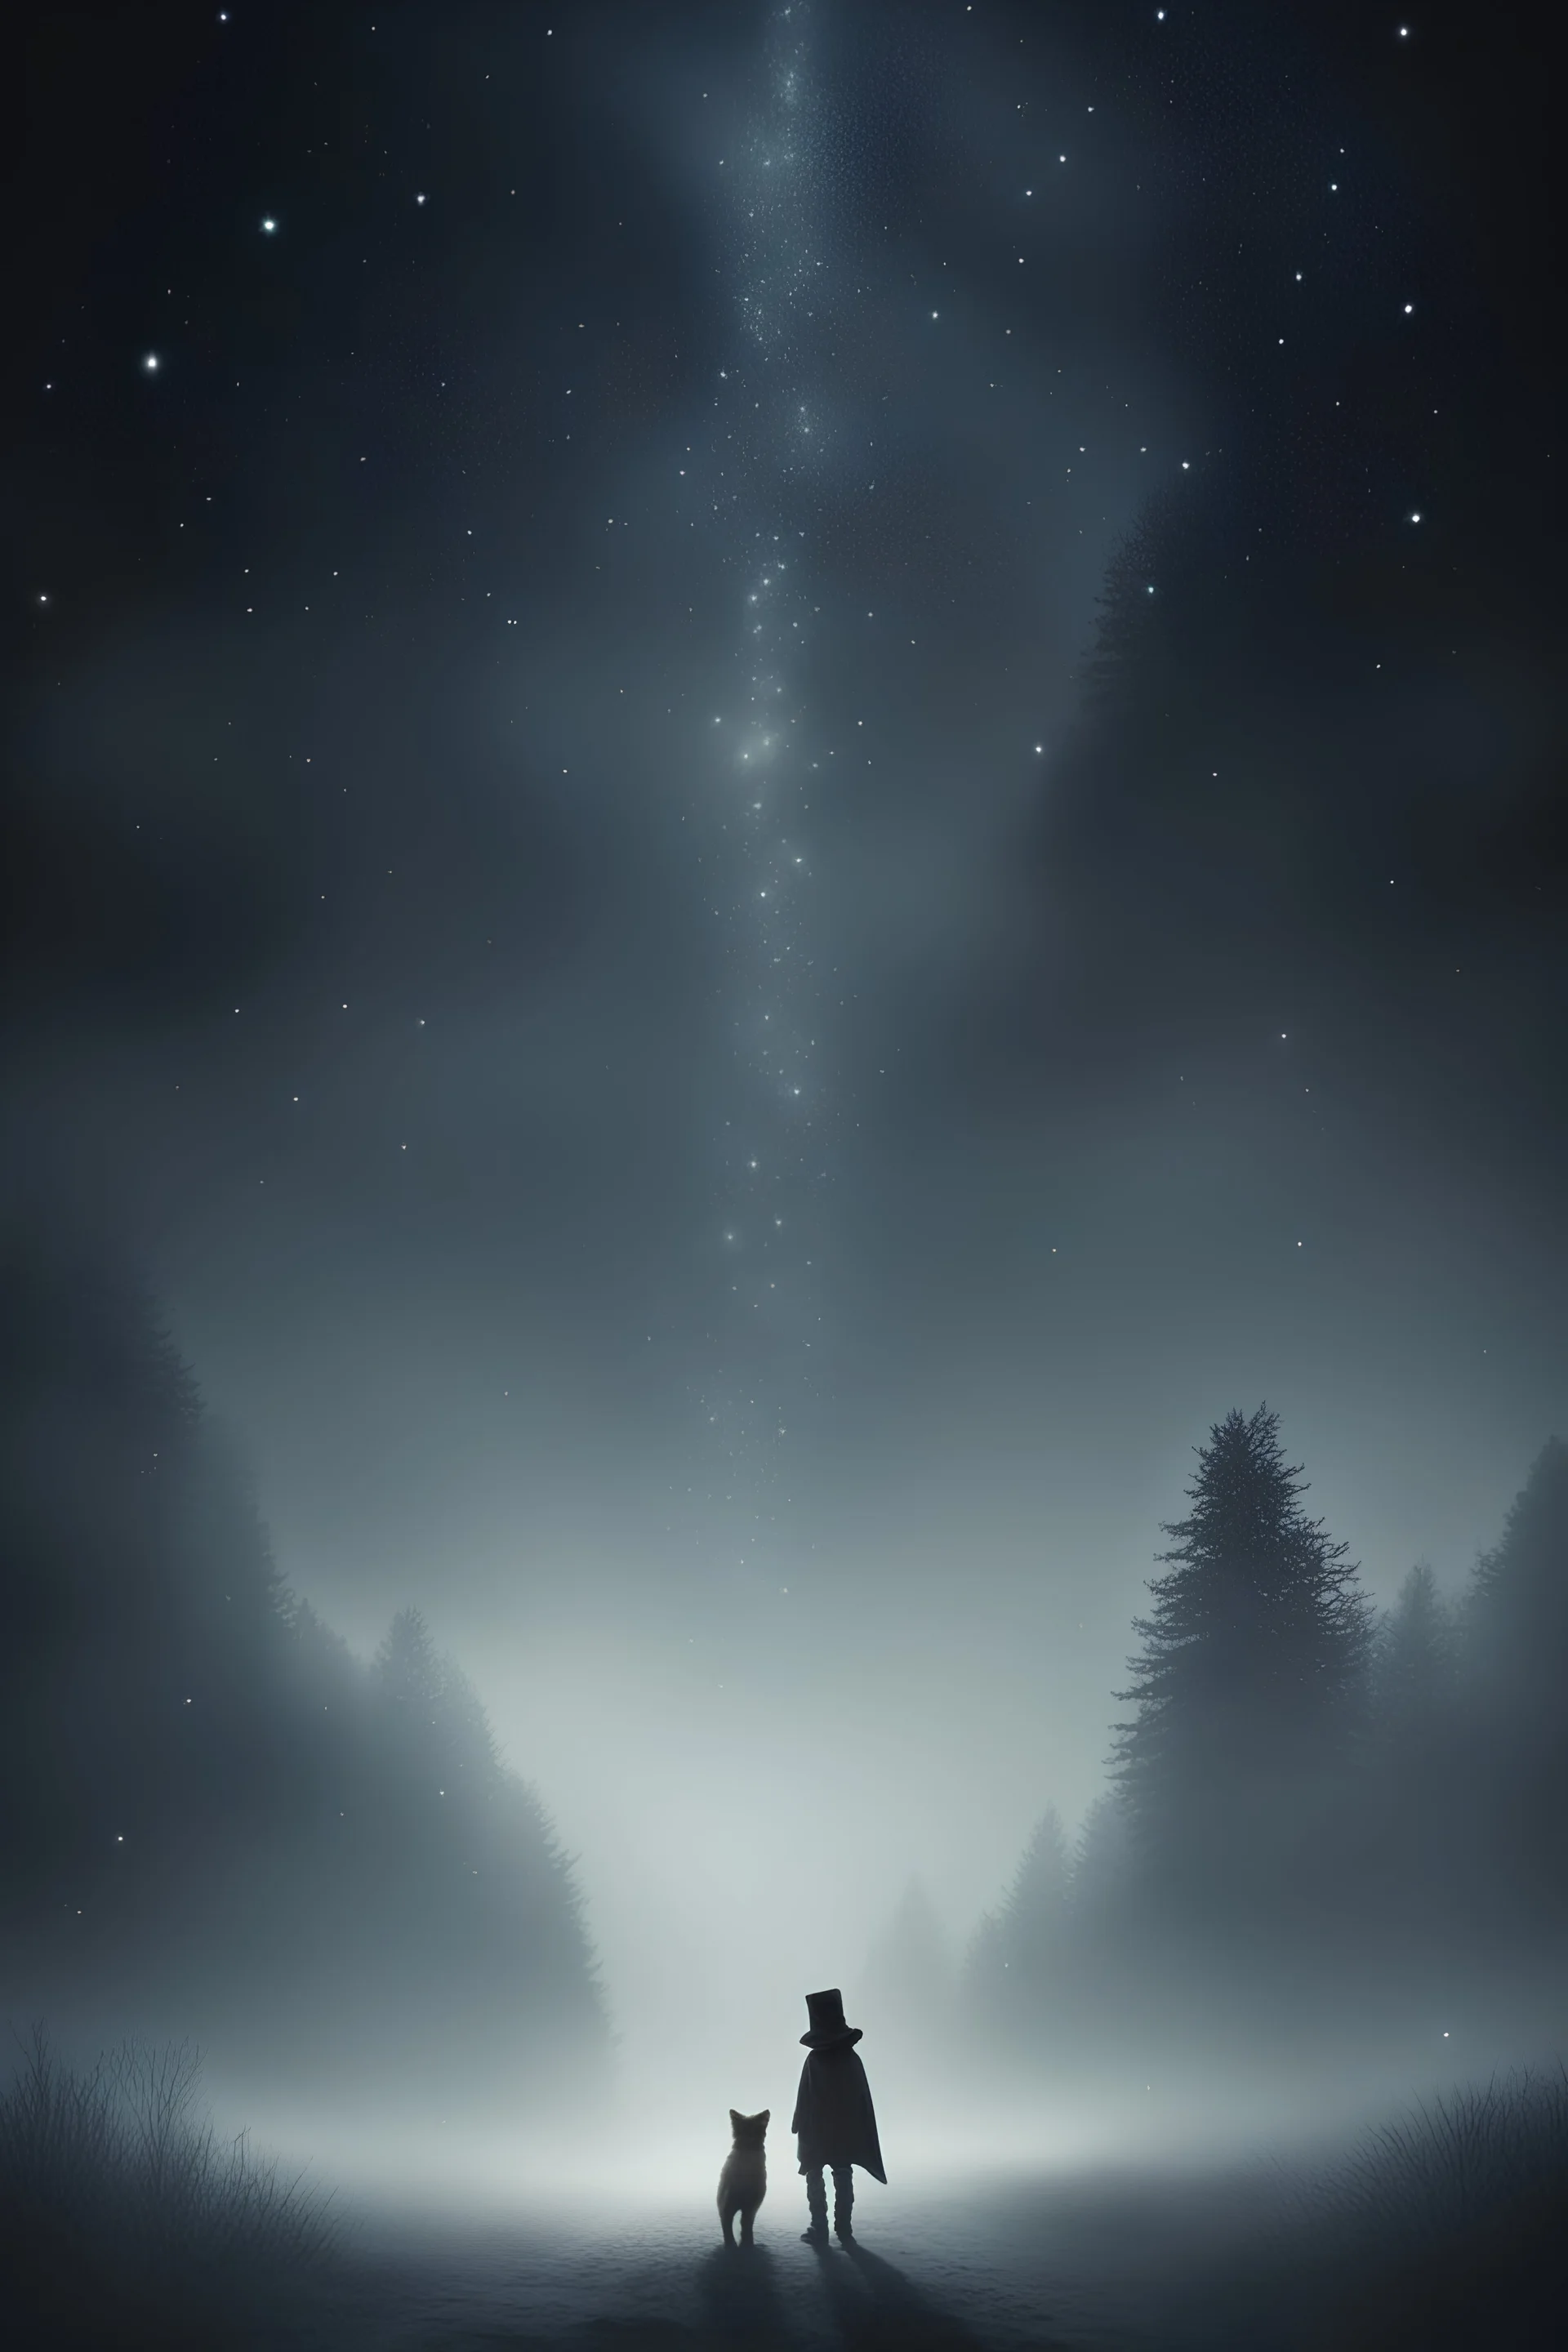 Мрак, протяженный путь стоит перед светловолосым мальчиком и звездным хитрым лисом, сквозь туман виднеются проблески звездного неба, указывающего дорогу двум путникам светловолосому мальчику и лису